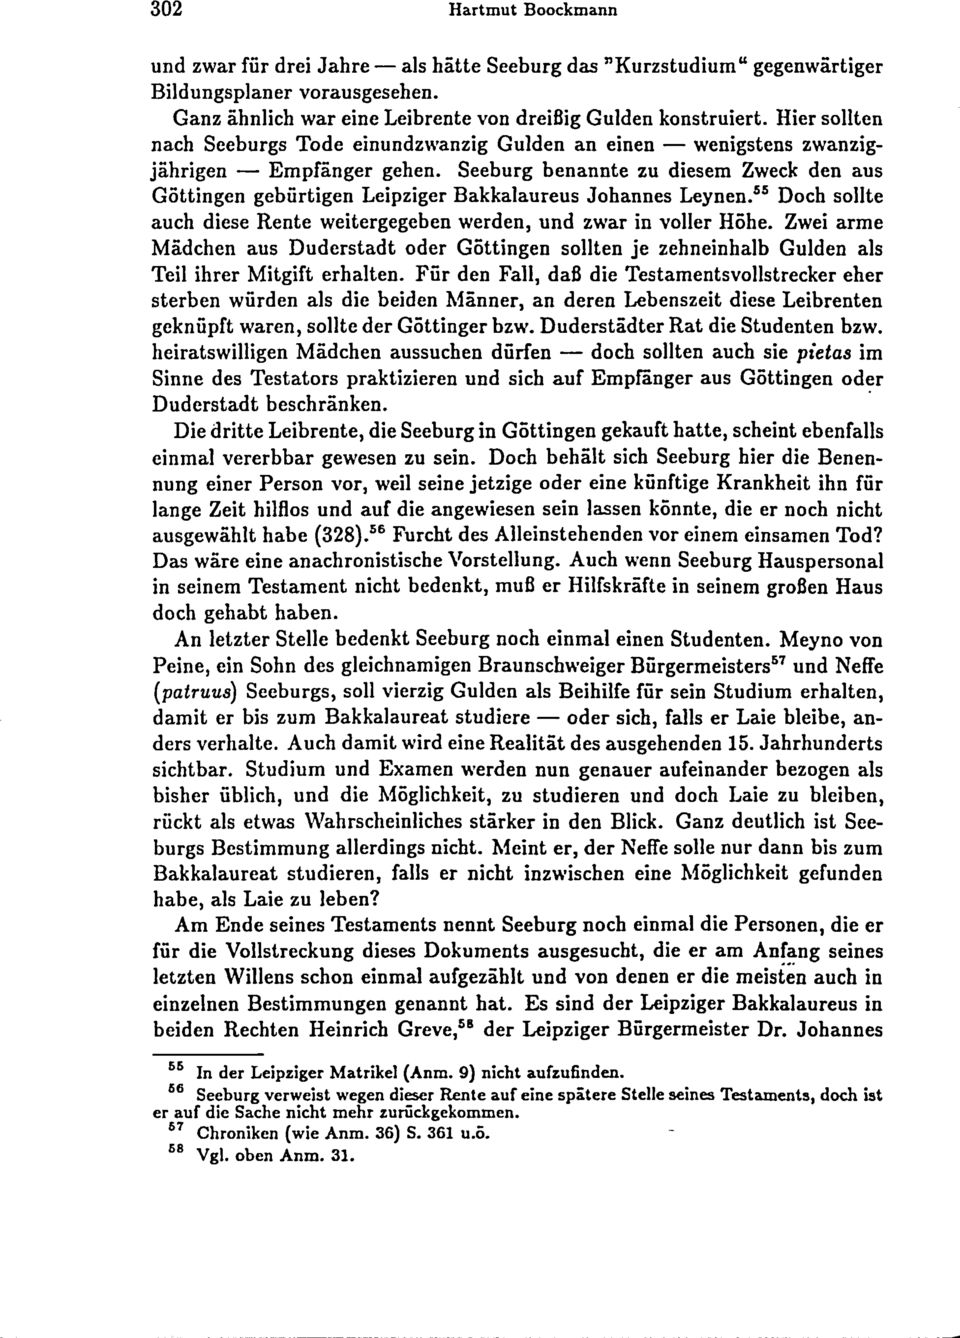 Seeburg benannte zu diesem Zweck den aus Göttingen gebürtigen Leipziger Bakkalaureus Johannes Leynen. 55 Doch sollte auch diese Rente weitergegeben werden, und zwar in voller Höhe.